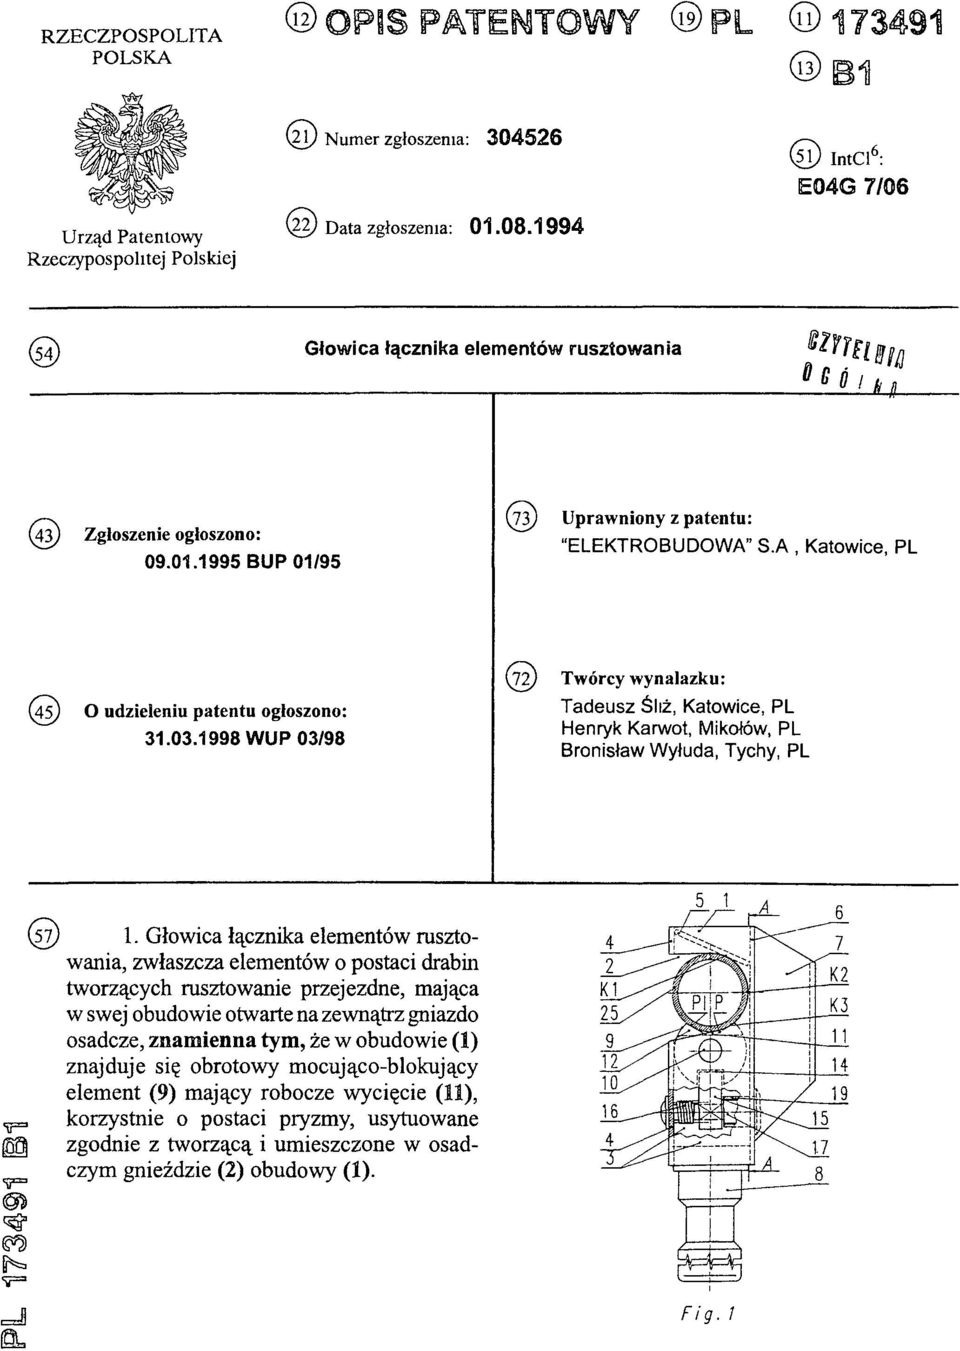 1995 BUP 01/95 (73) Uprawniony z patentu: ELEKTROBUDOWA" S A, Katowice, PL (45) O udzieleniu patentu ogłoszono: 31.03.